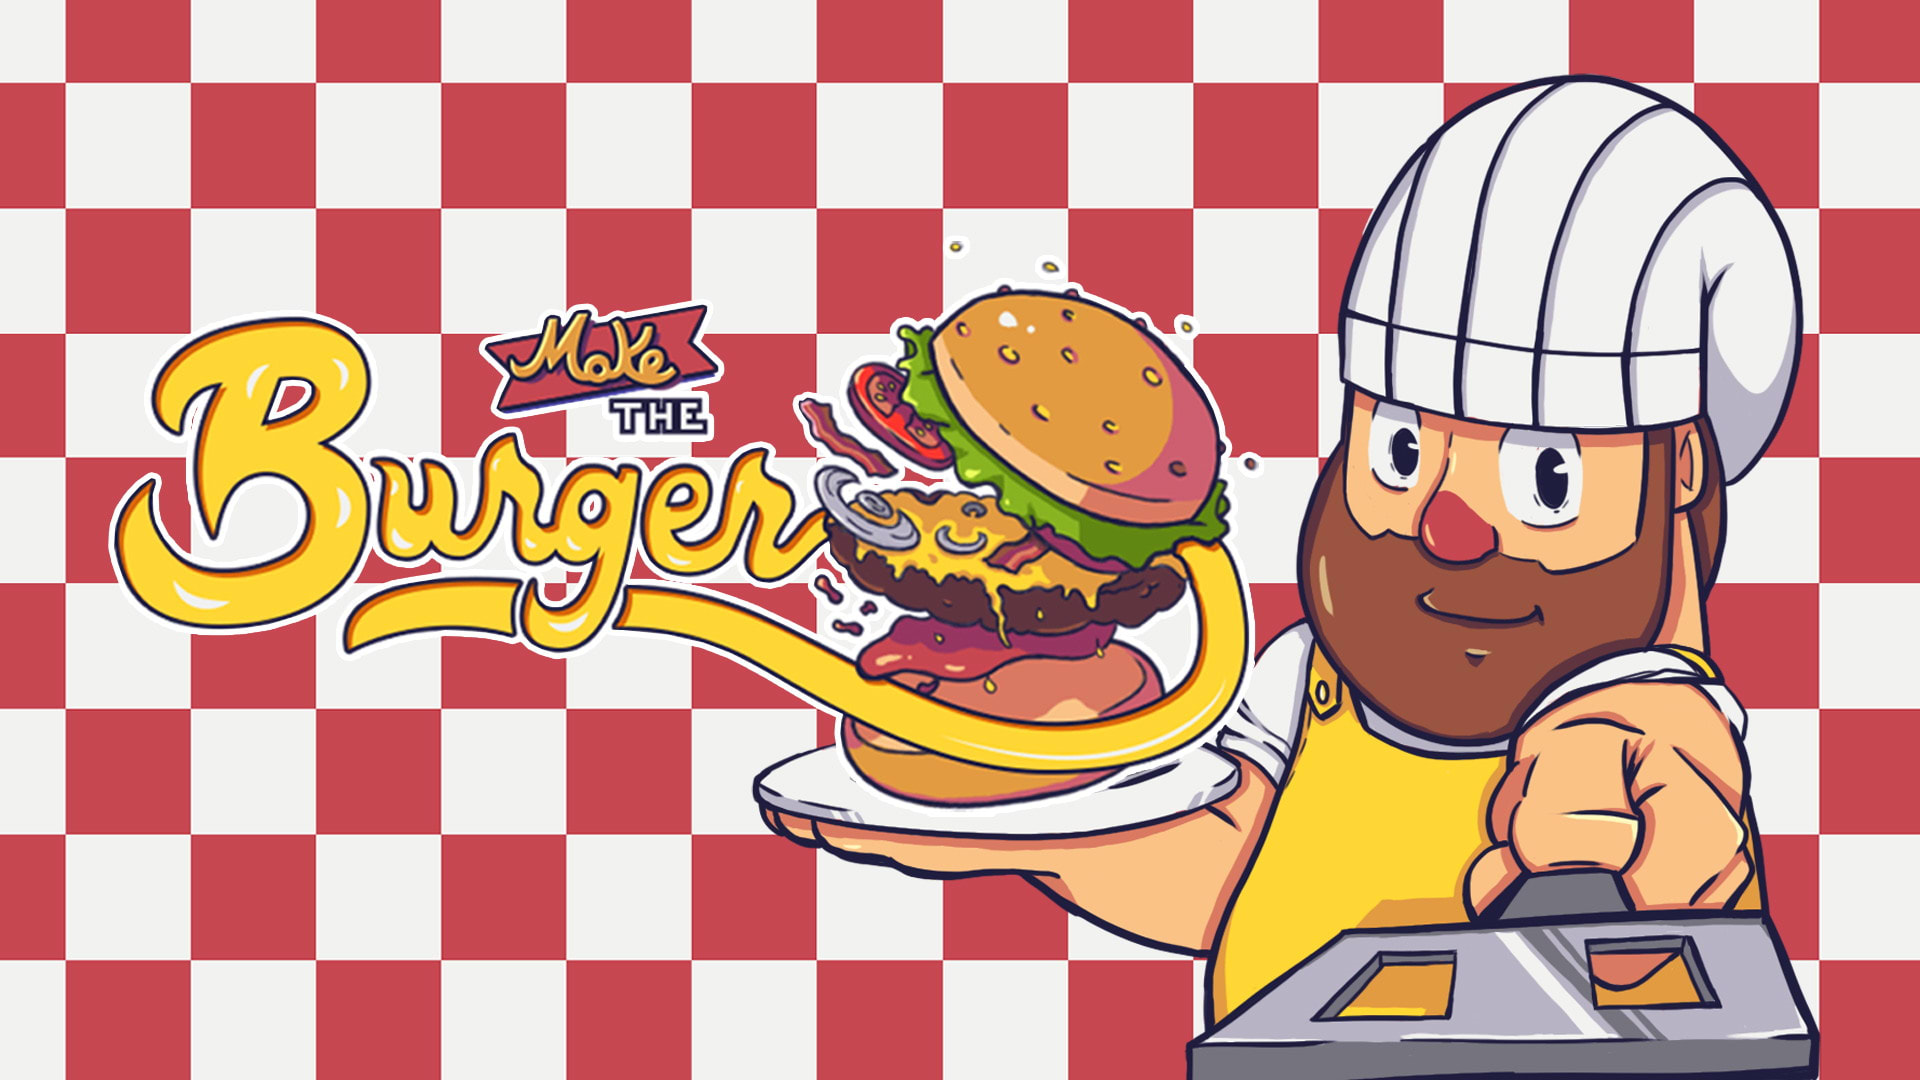 Make the Burger 1